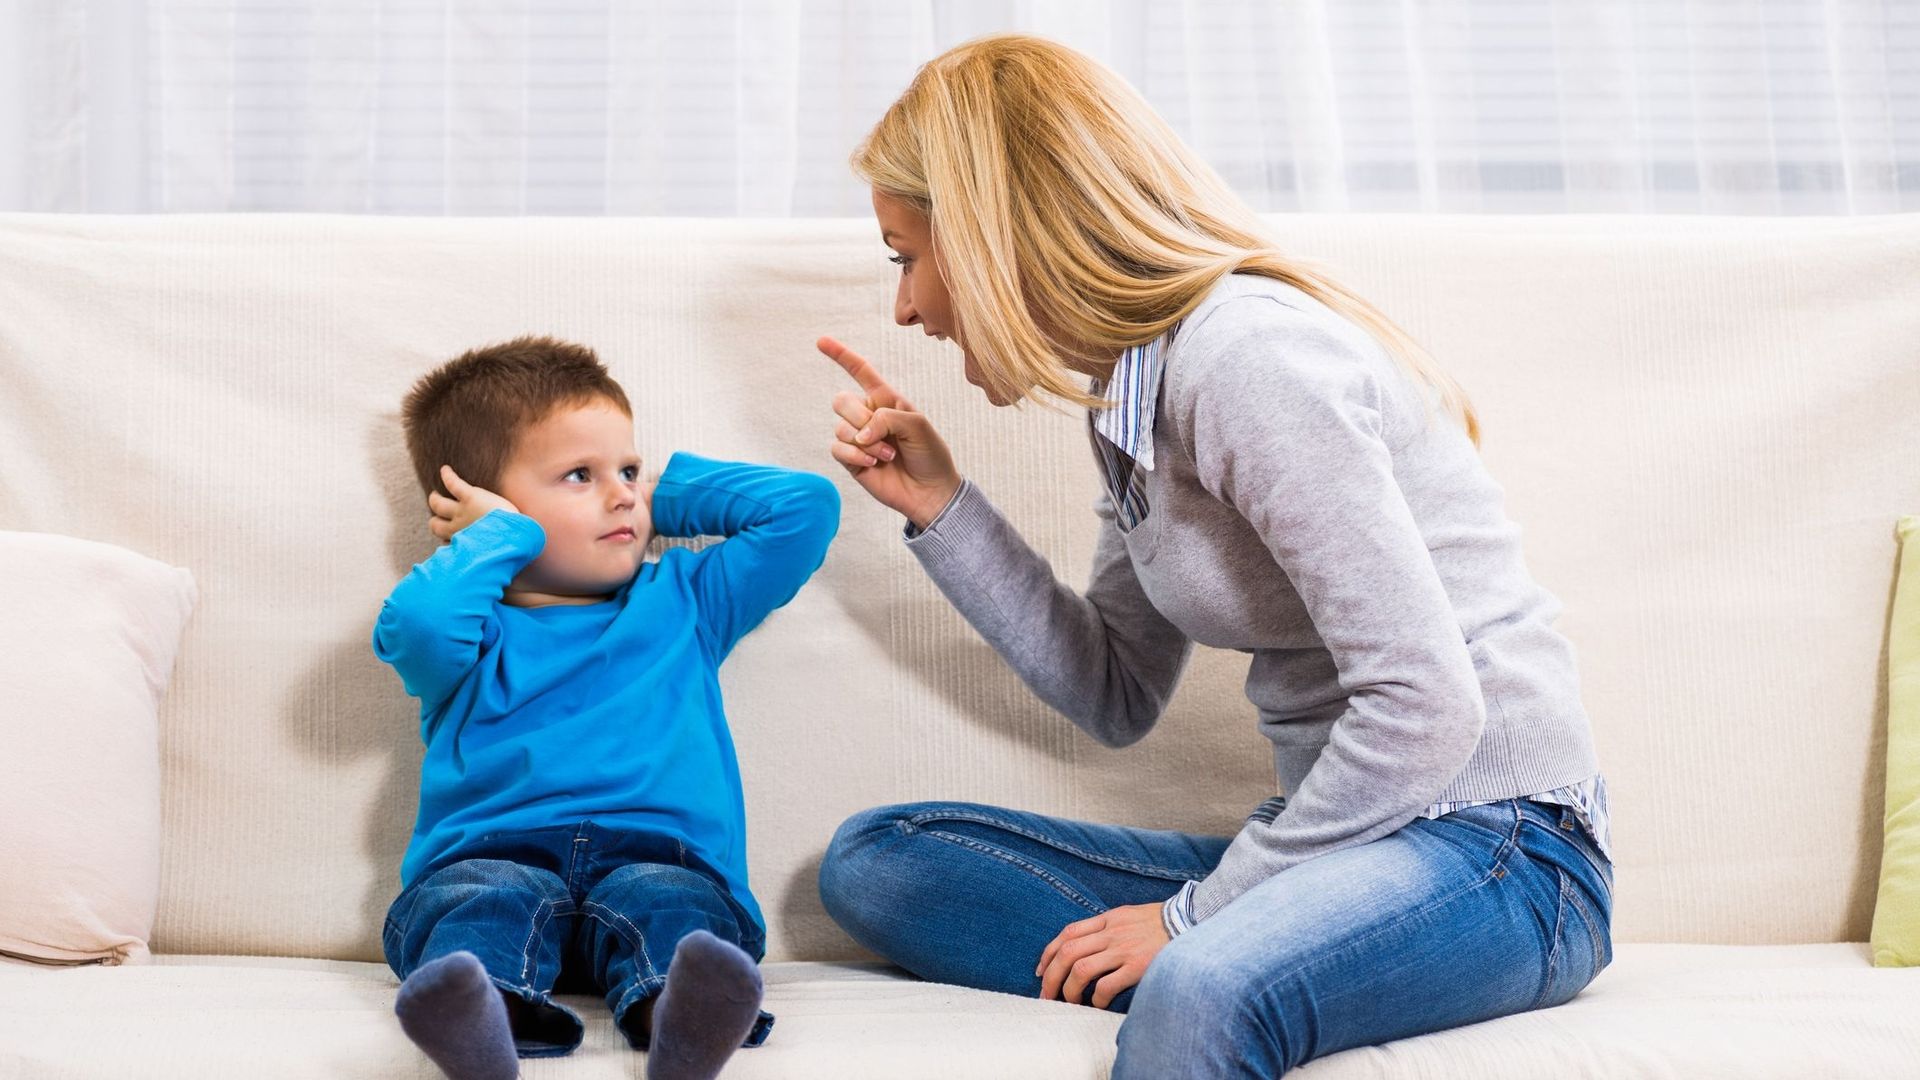 Les mères colériques et sévères ont plus de risques d'avoir des enfants avec des troubles du comportement